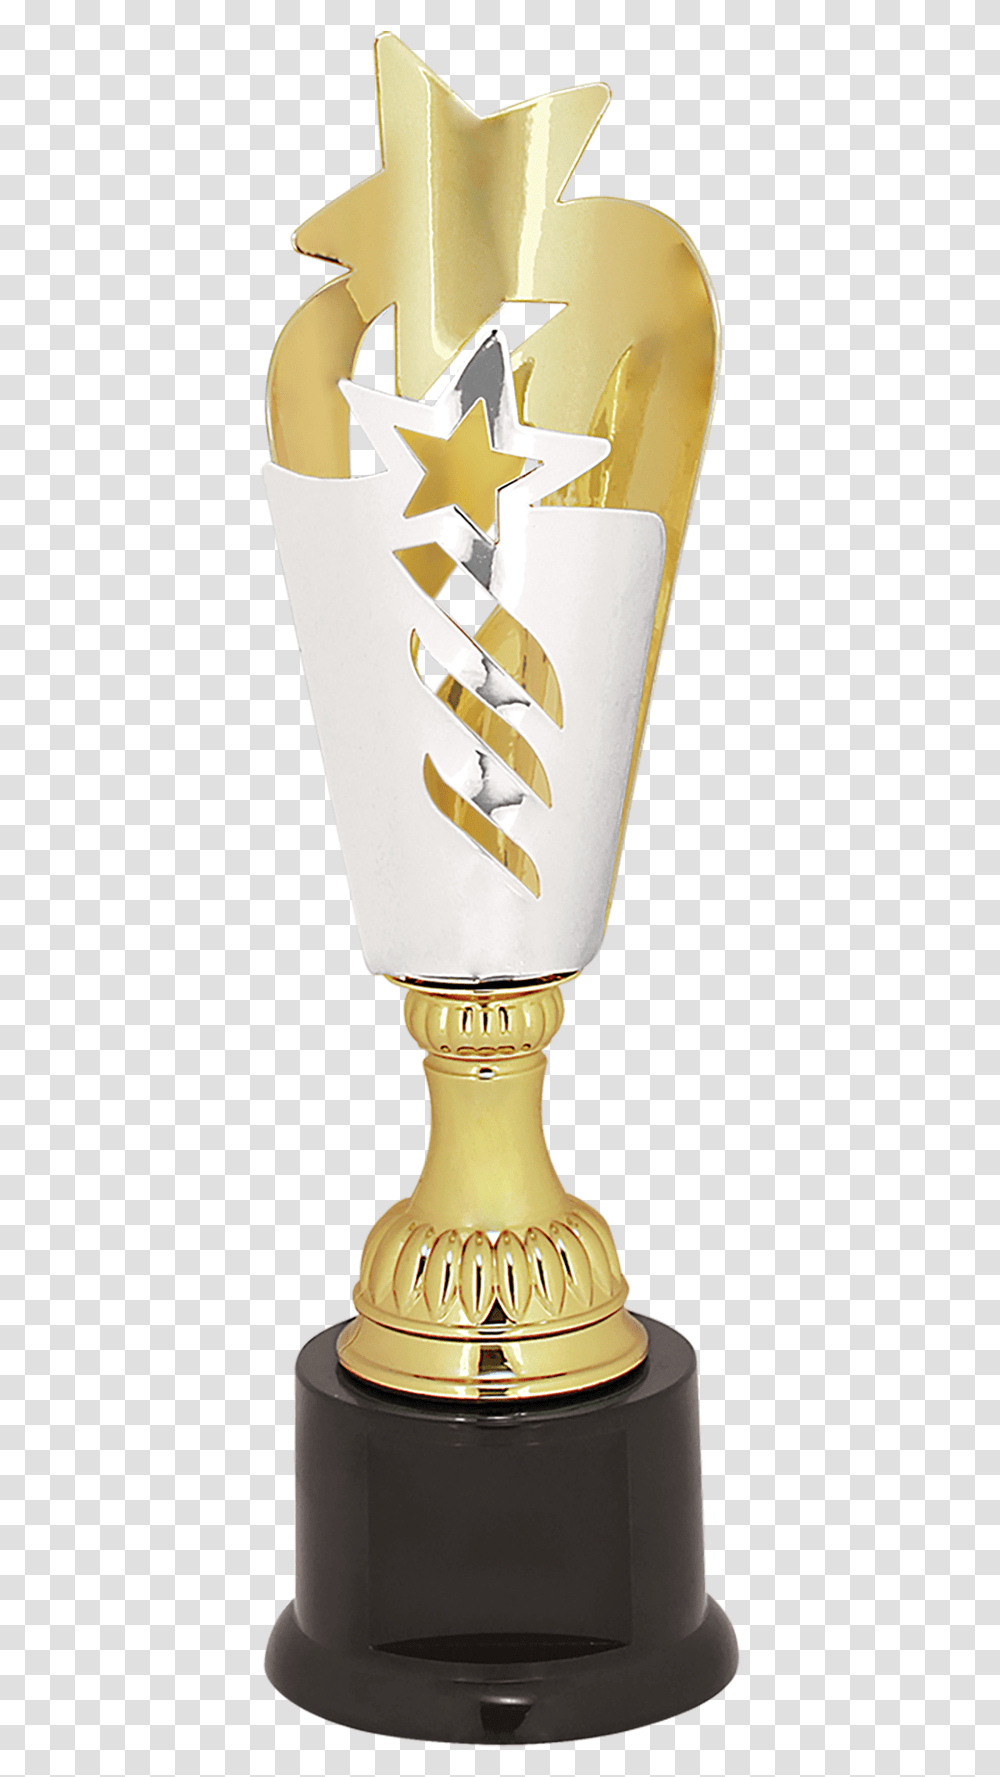 Silver Amp Gold Star Metal Cup Trophy, Light, Lightbulb, Wedding Cake, Dessert Transparent Png